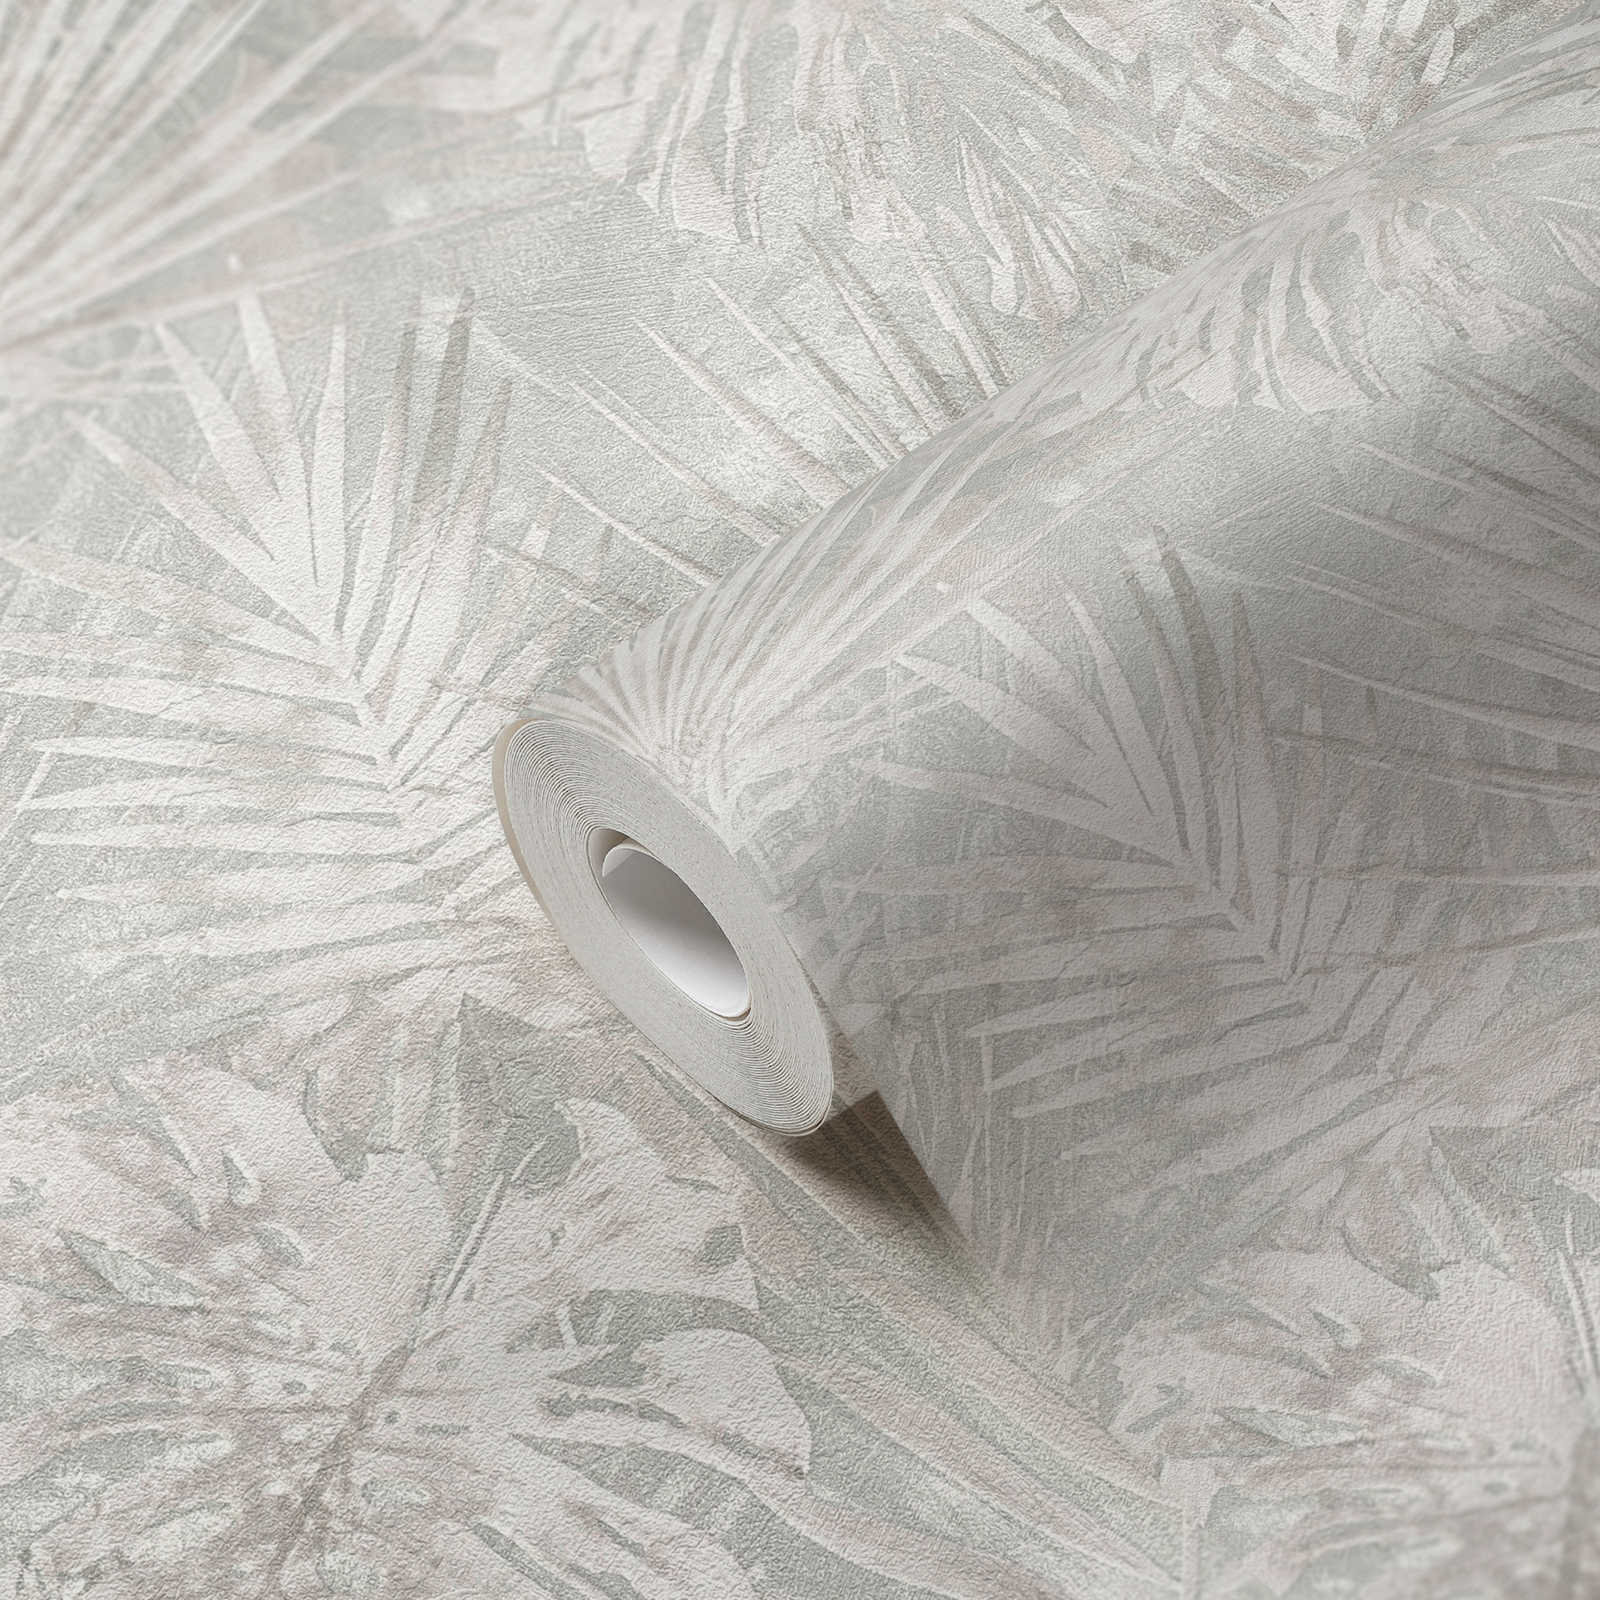             Papel pintado no tejido con motivo de hojas Sin PVC - gris, beige, blanco
        